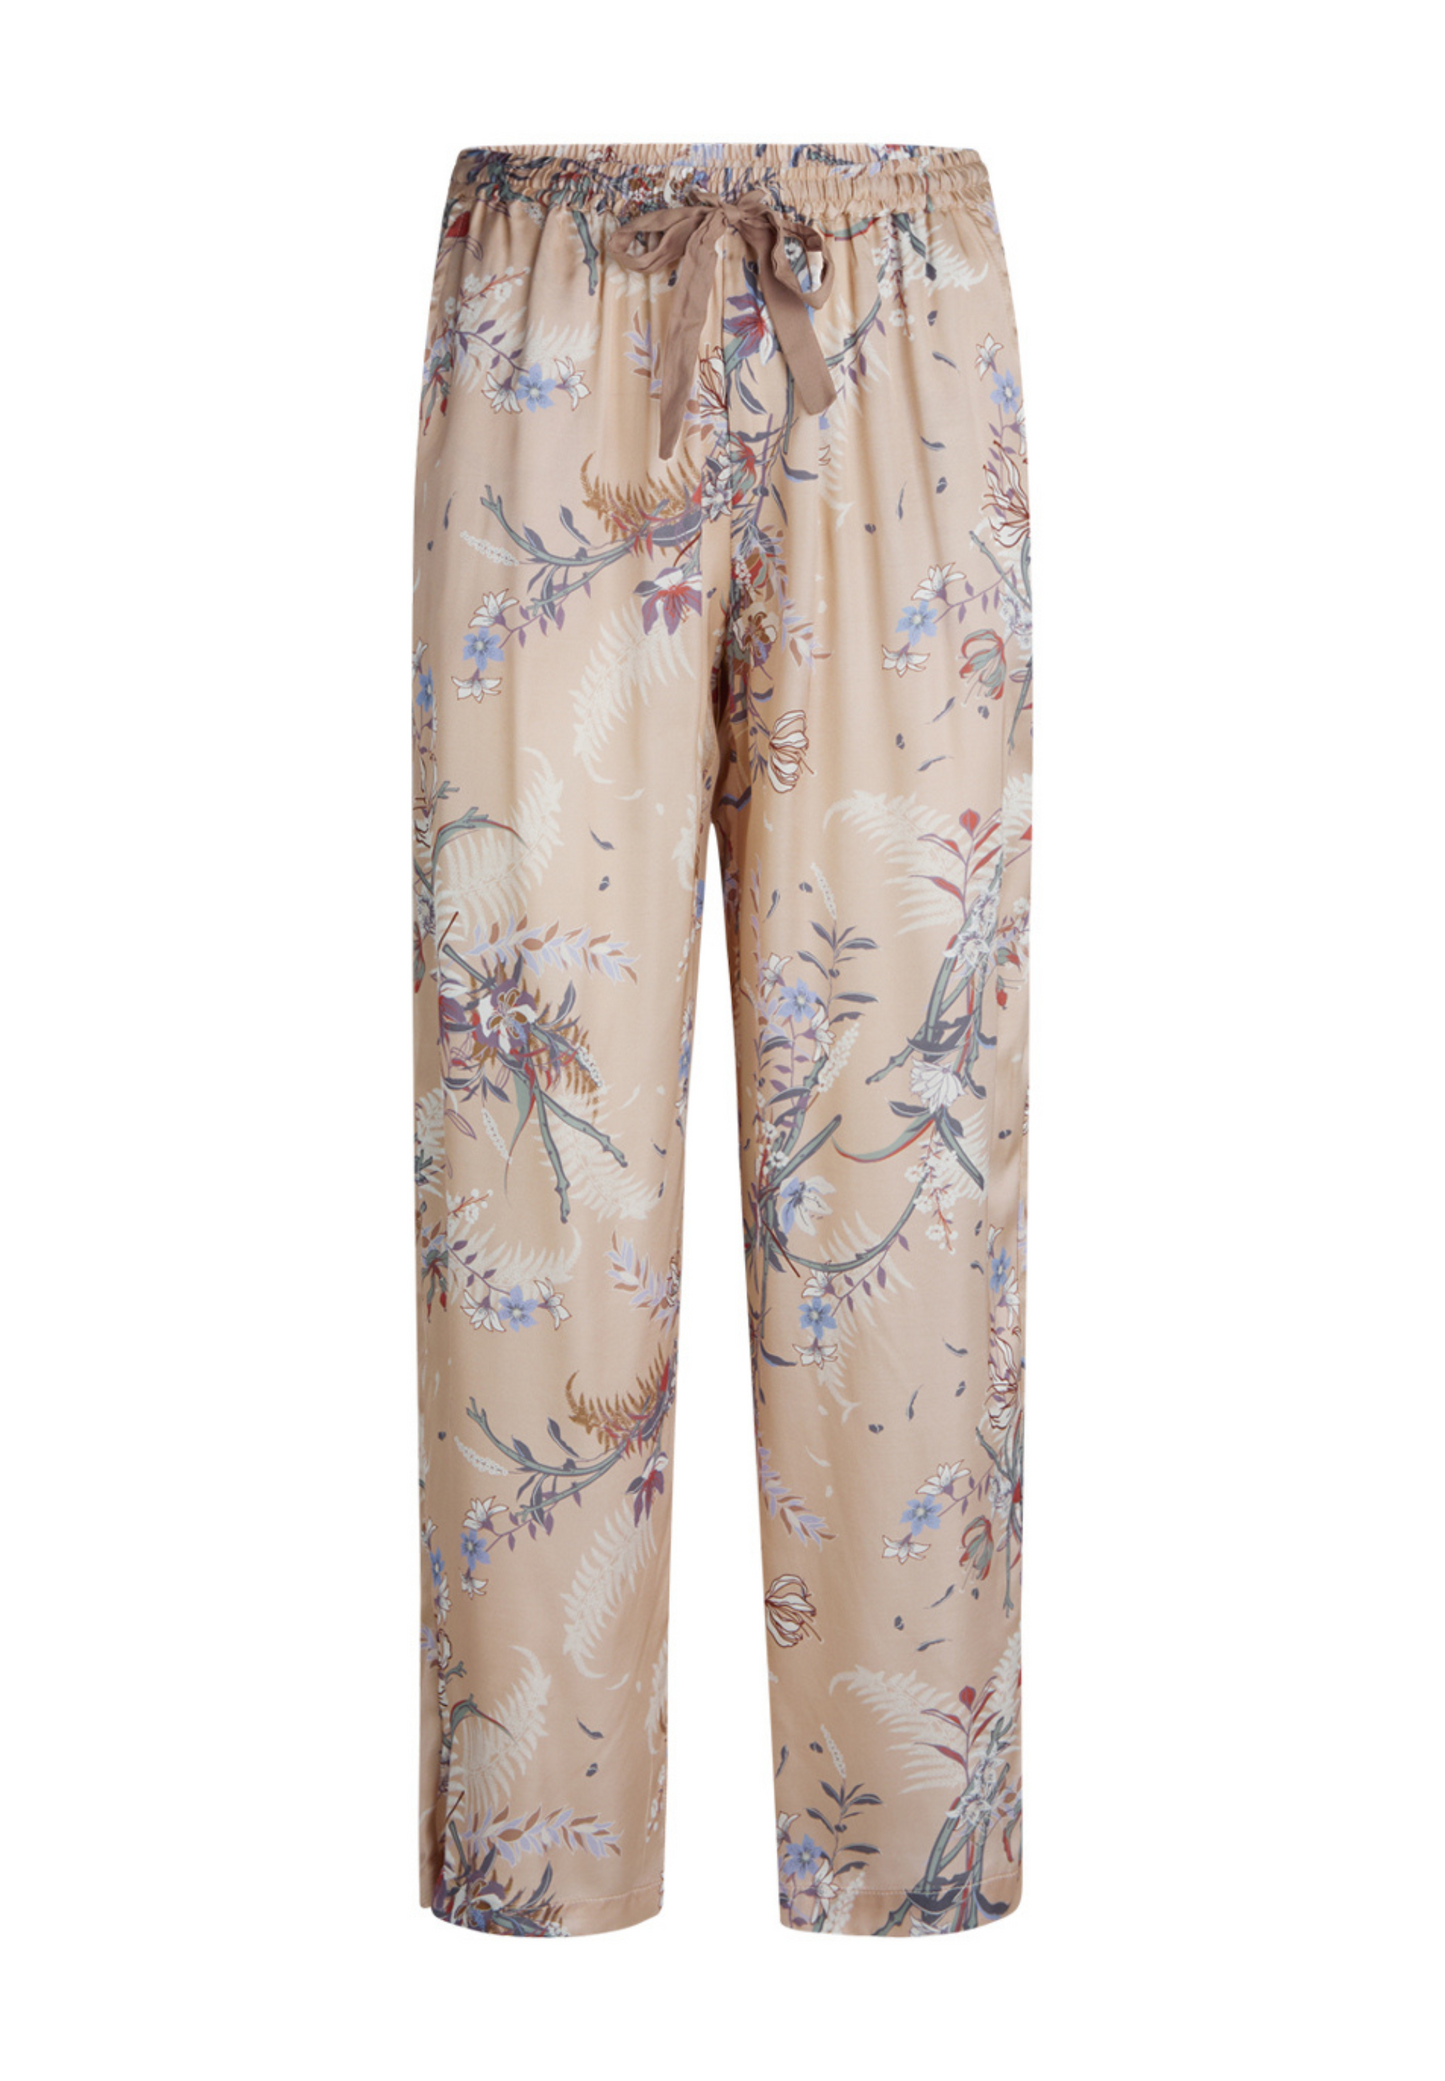 Katrina pyjamasbukser med print moonlight